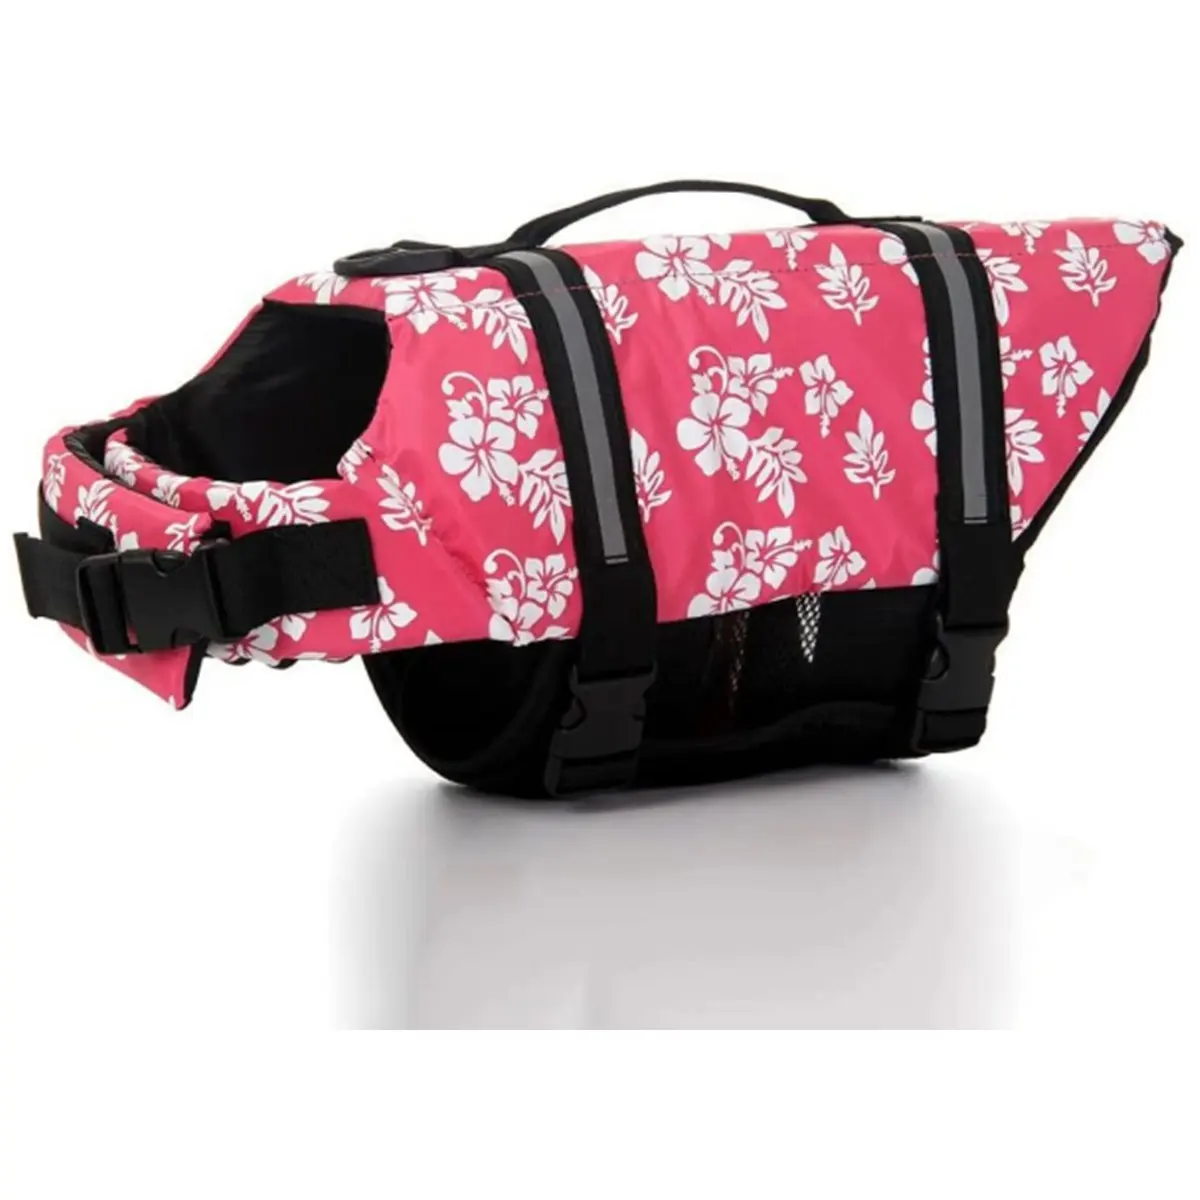 Dog Life Jacket Vest Saver Safety Preserver mit reflektieren den Streifen für verstellbares Pet Saver-Schwimmen (Petal Pink, X-Small)